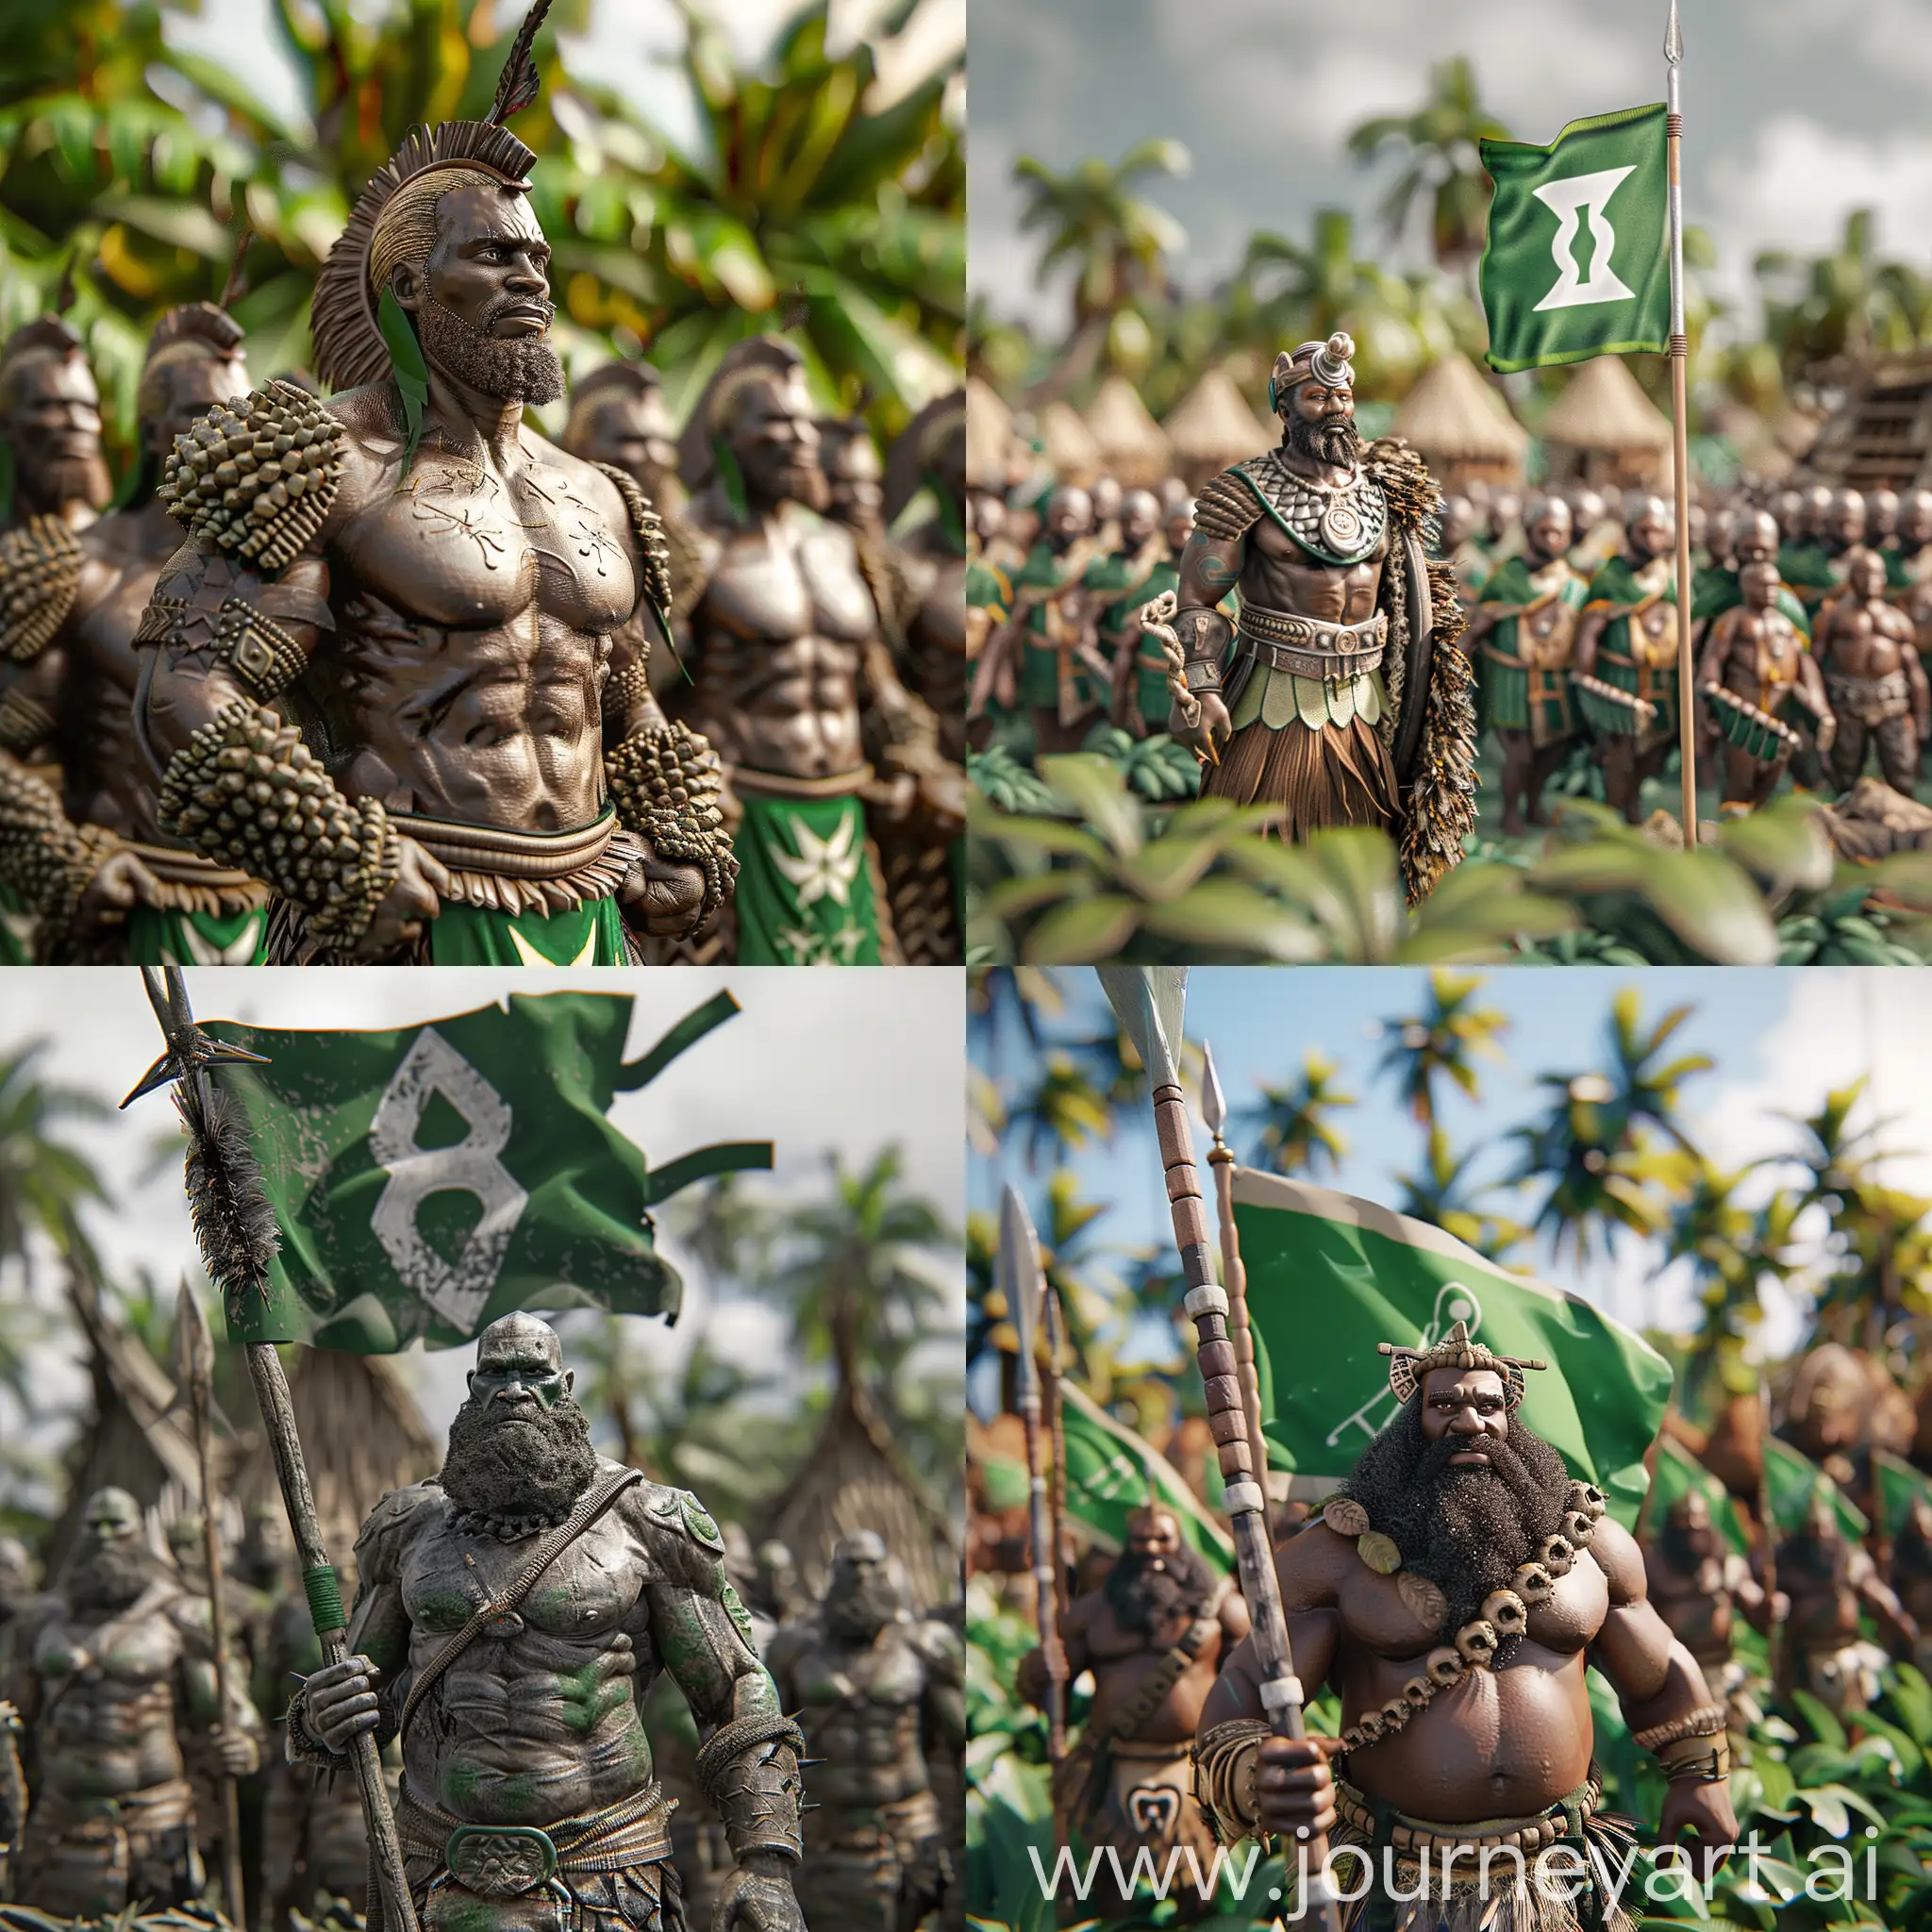 3д модель острова Папуа Гвинейский Союз с зеленым флагом по центру которого цифра 8, деревней на фоне, с белыми (не загорелыми) бородатыми накаченными мужчинами в доспехах, так же на фоне куча зеленой растительности деревьев